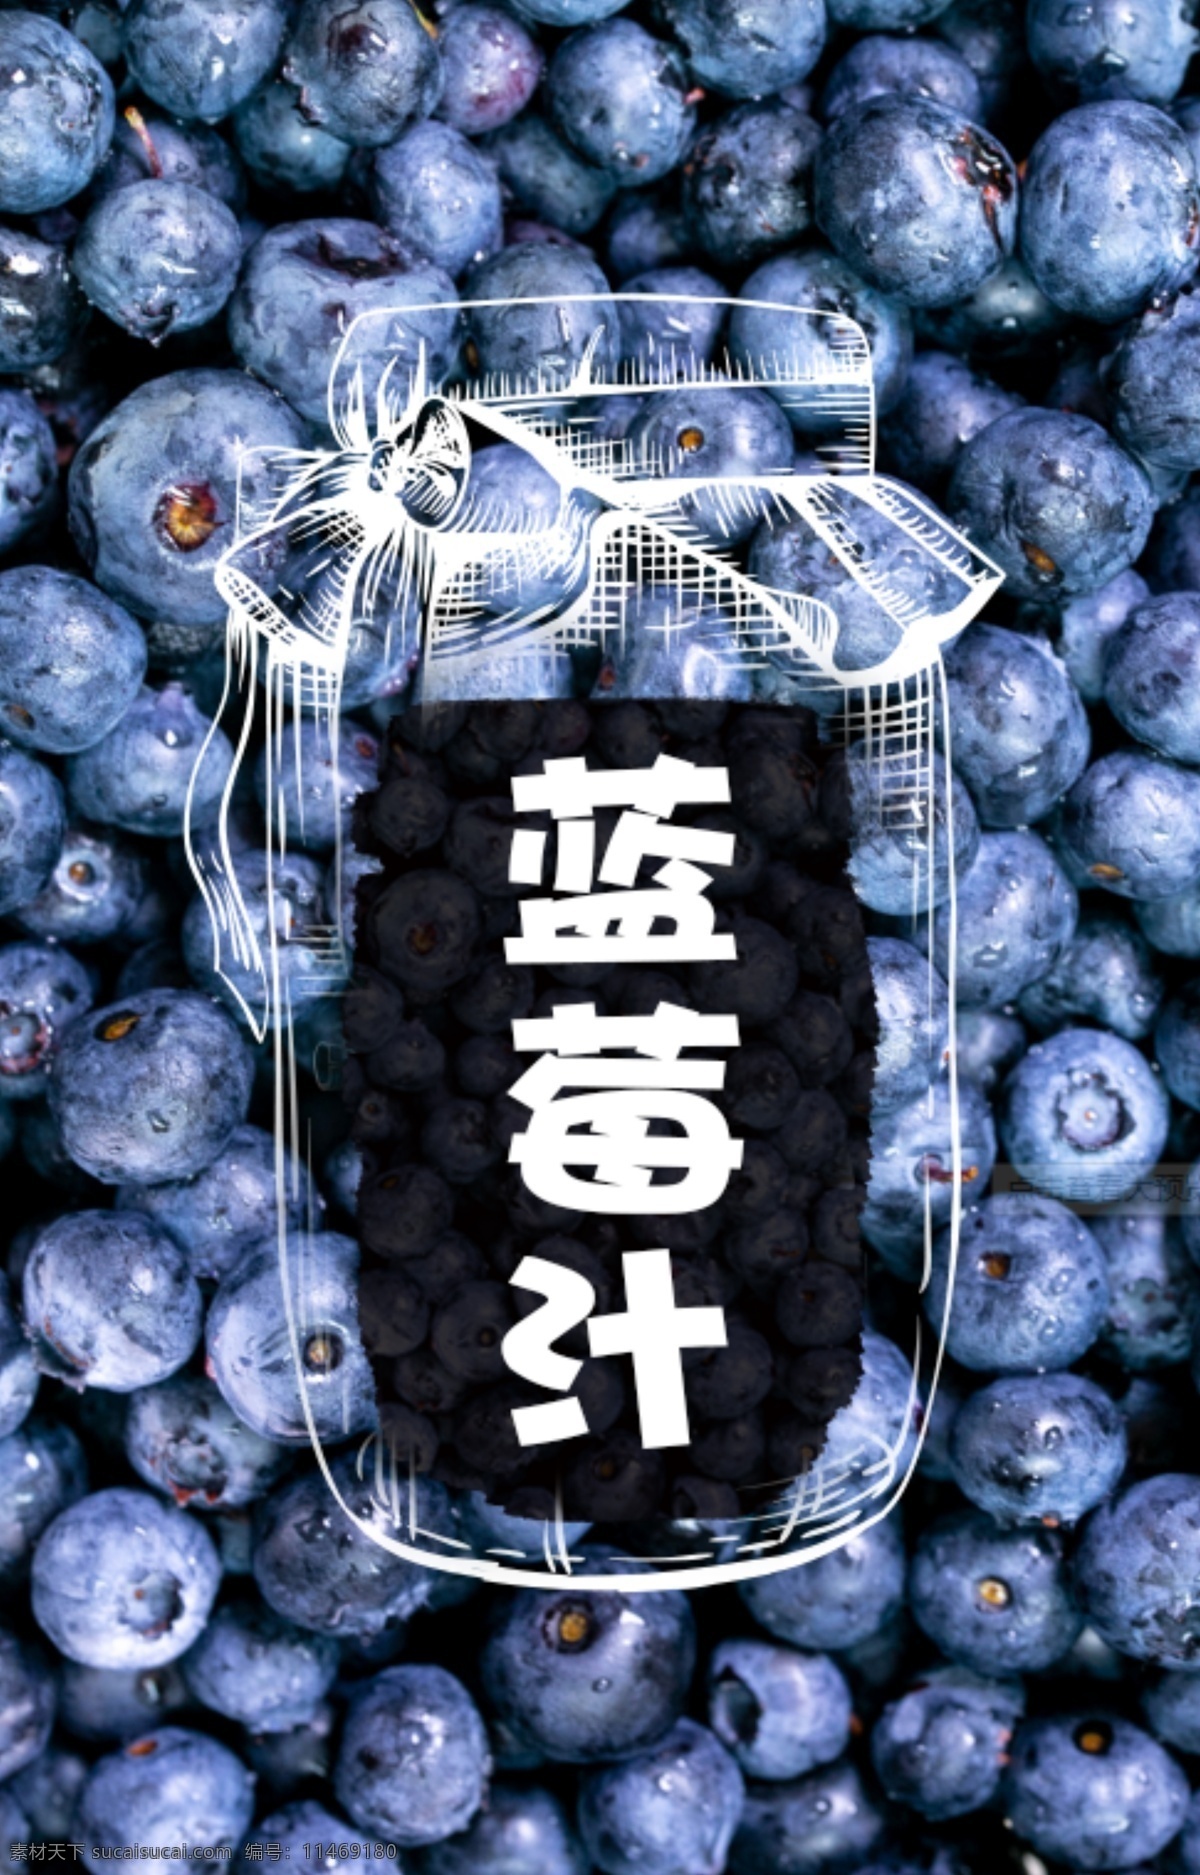 蓝莓汁 蓝莓 蓝莓背景 蓝莓背景图 水果背景